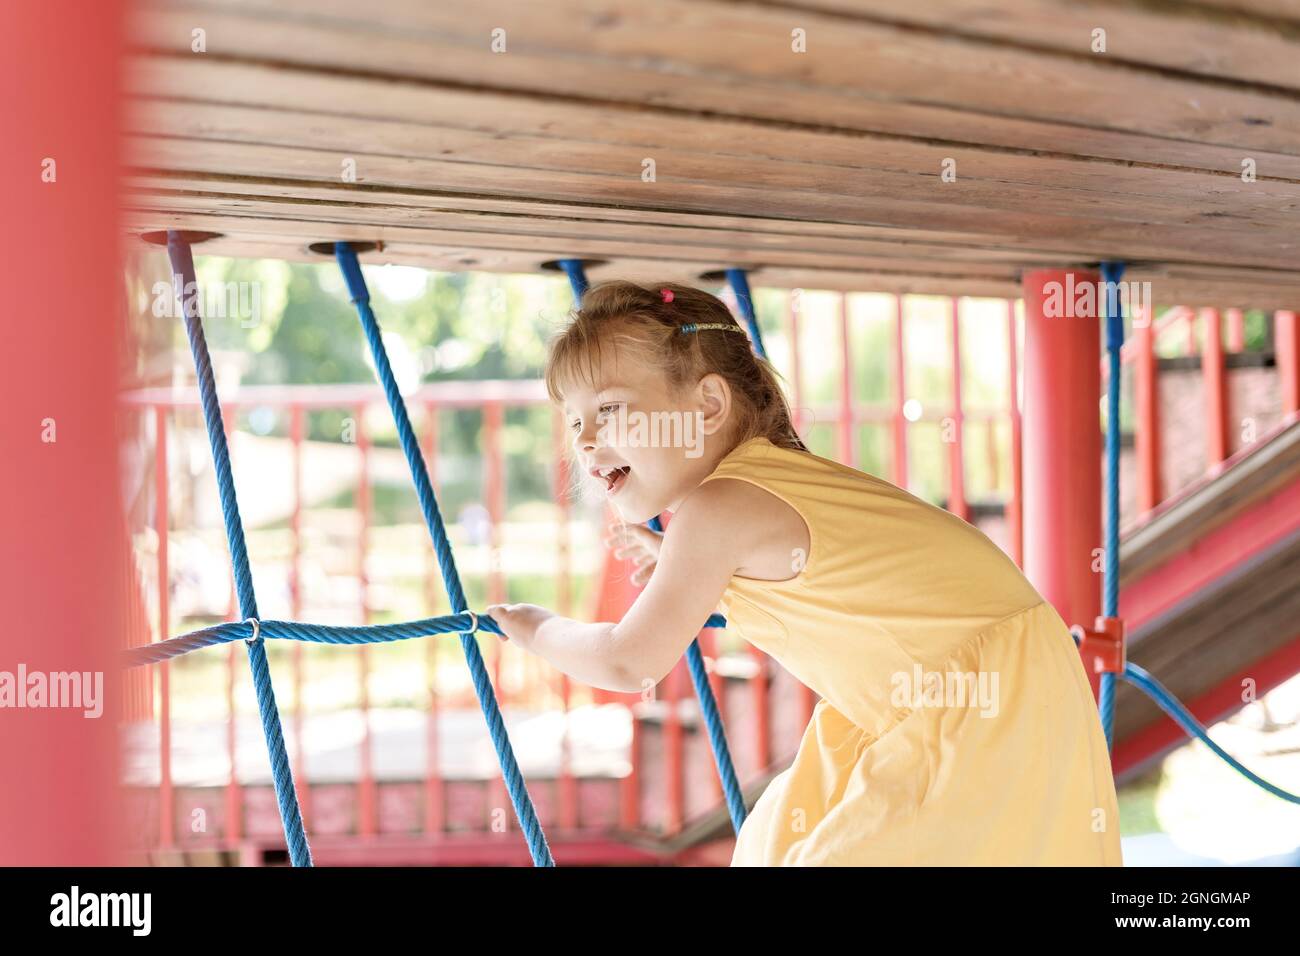 Les enfants jouent et grimpent à l'extérieur lors d'une belle journée d'été. Jolie fille dans une robe jaune sur une toile d'araignée Banque D'Images